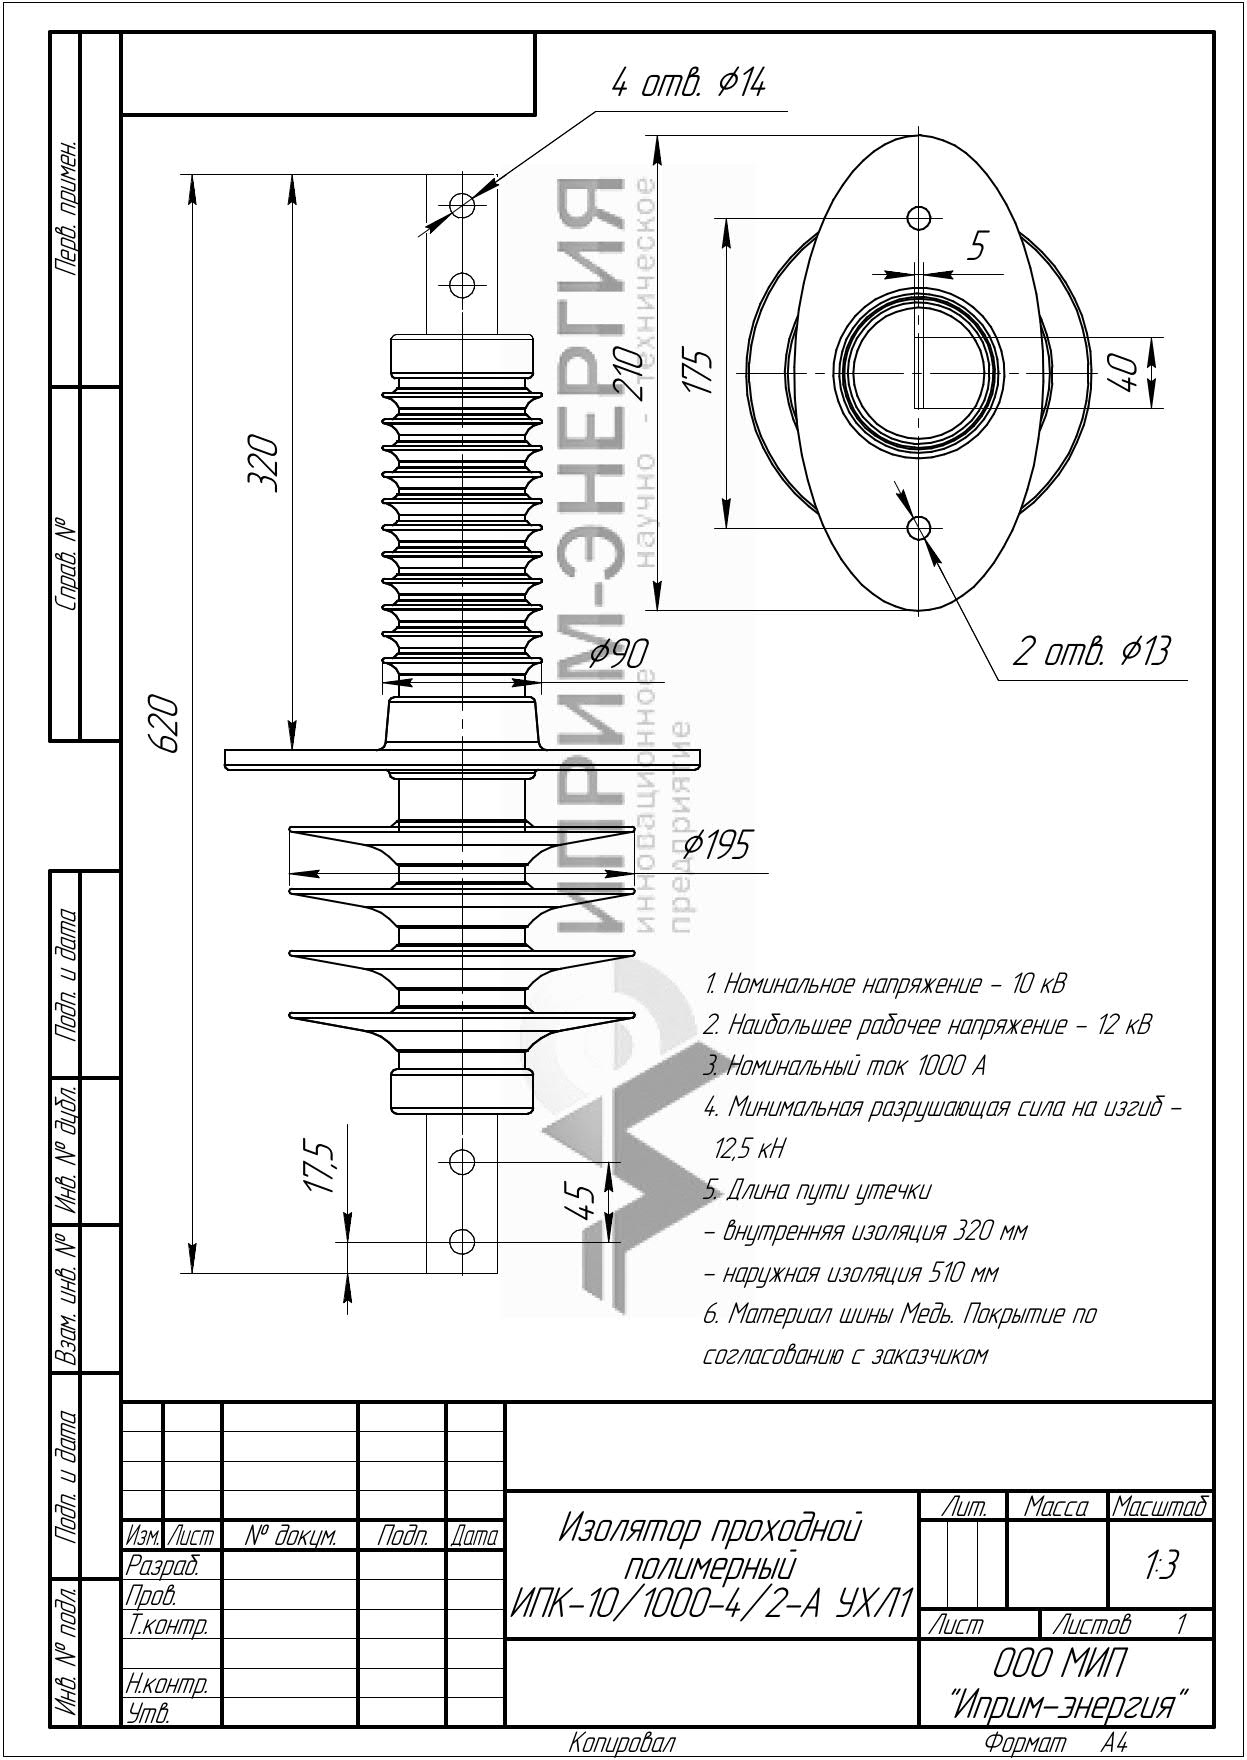 Изолятор проходной полимерный ИПК-10/1000-4/2-А УХЛ1 чертеж